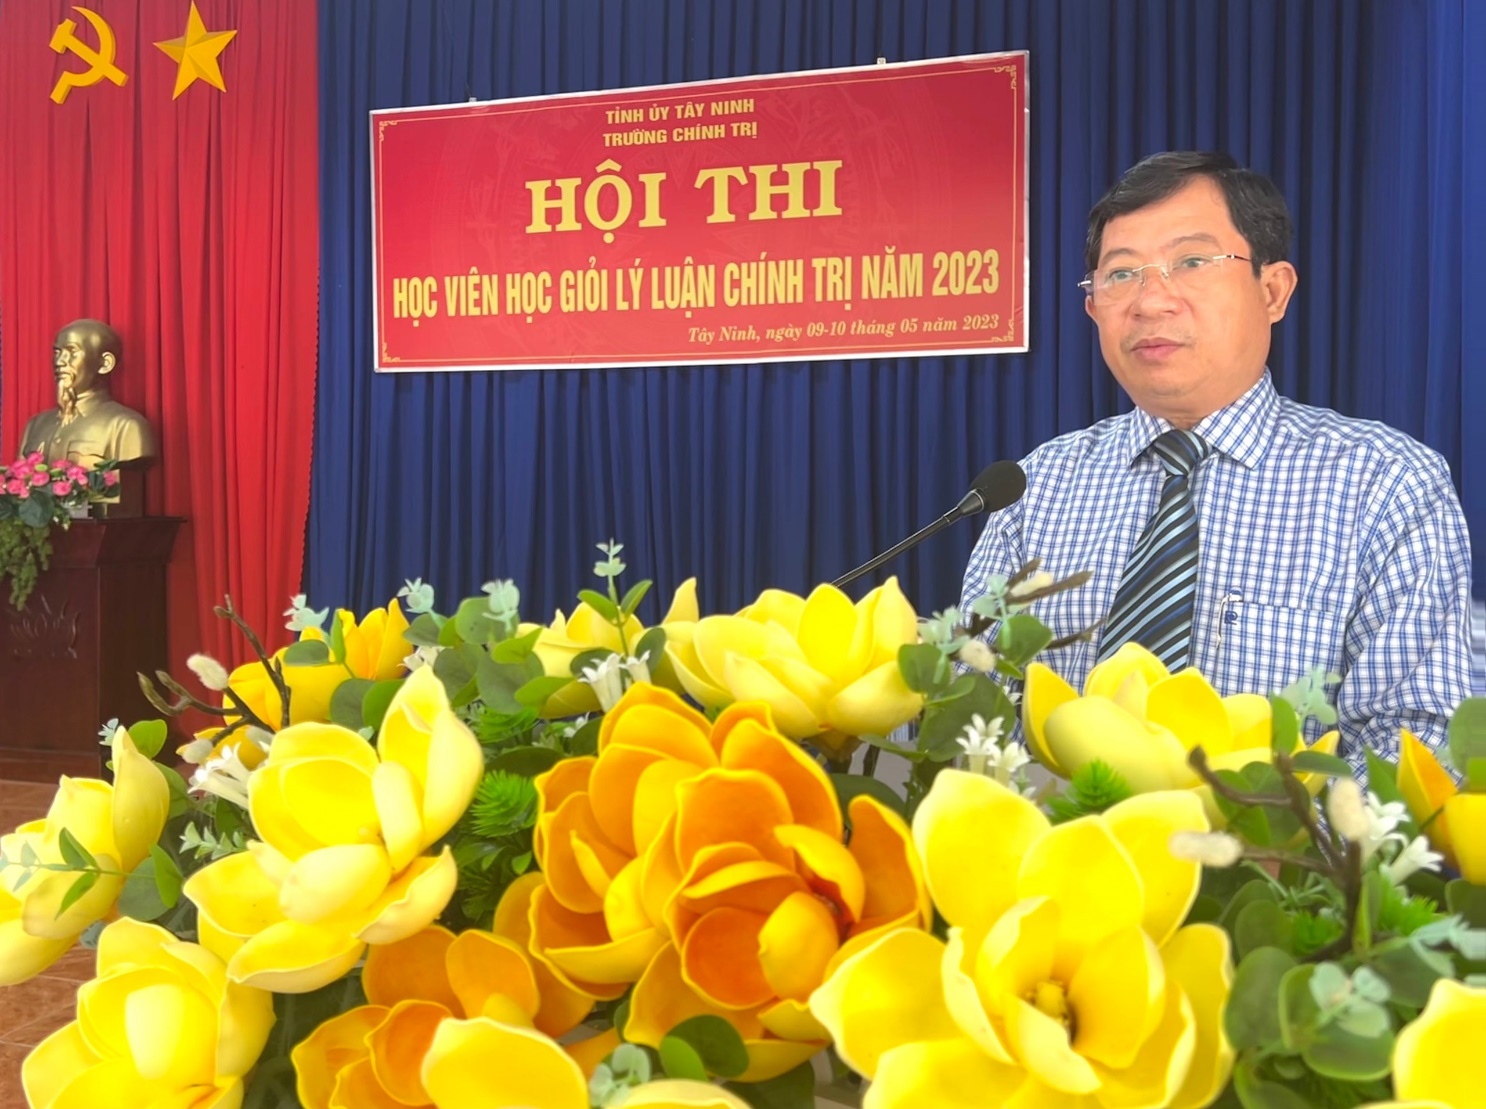 Trường Chính trị tỉnh Tây Ninh tổ chức Hội thi học viên học giỏi lý luận chính trị năm 2023